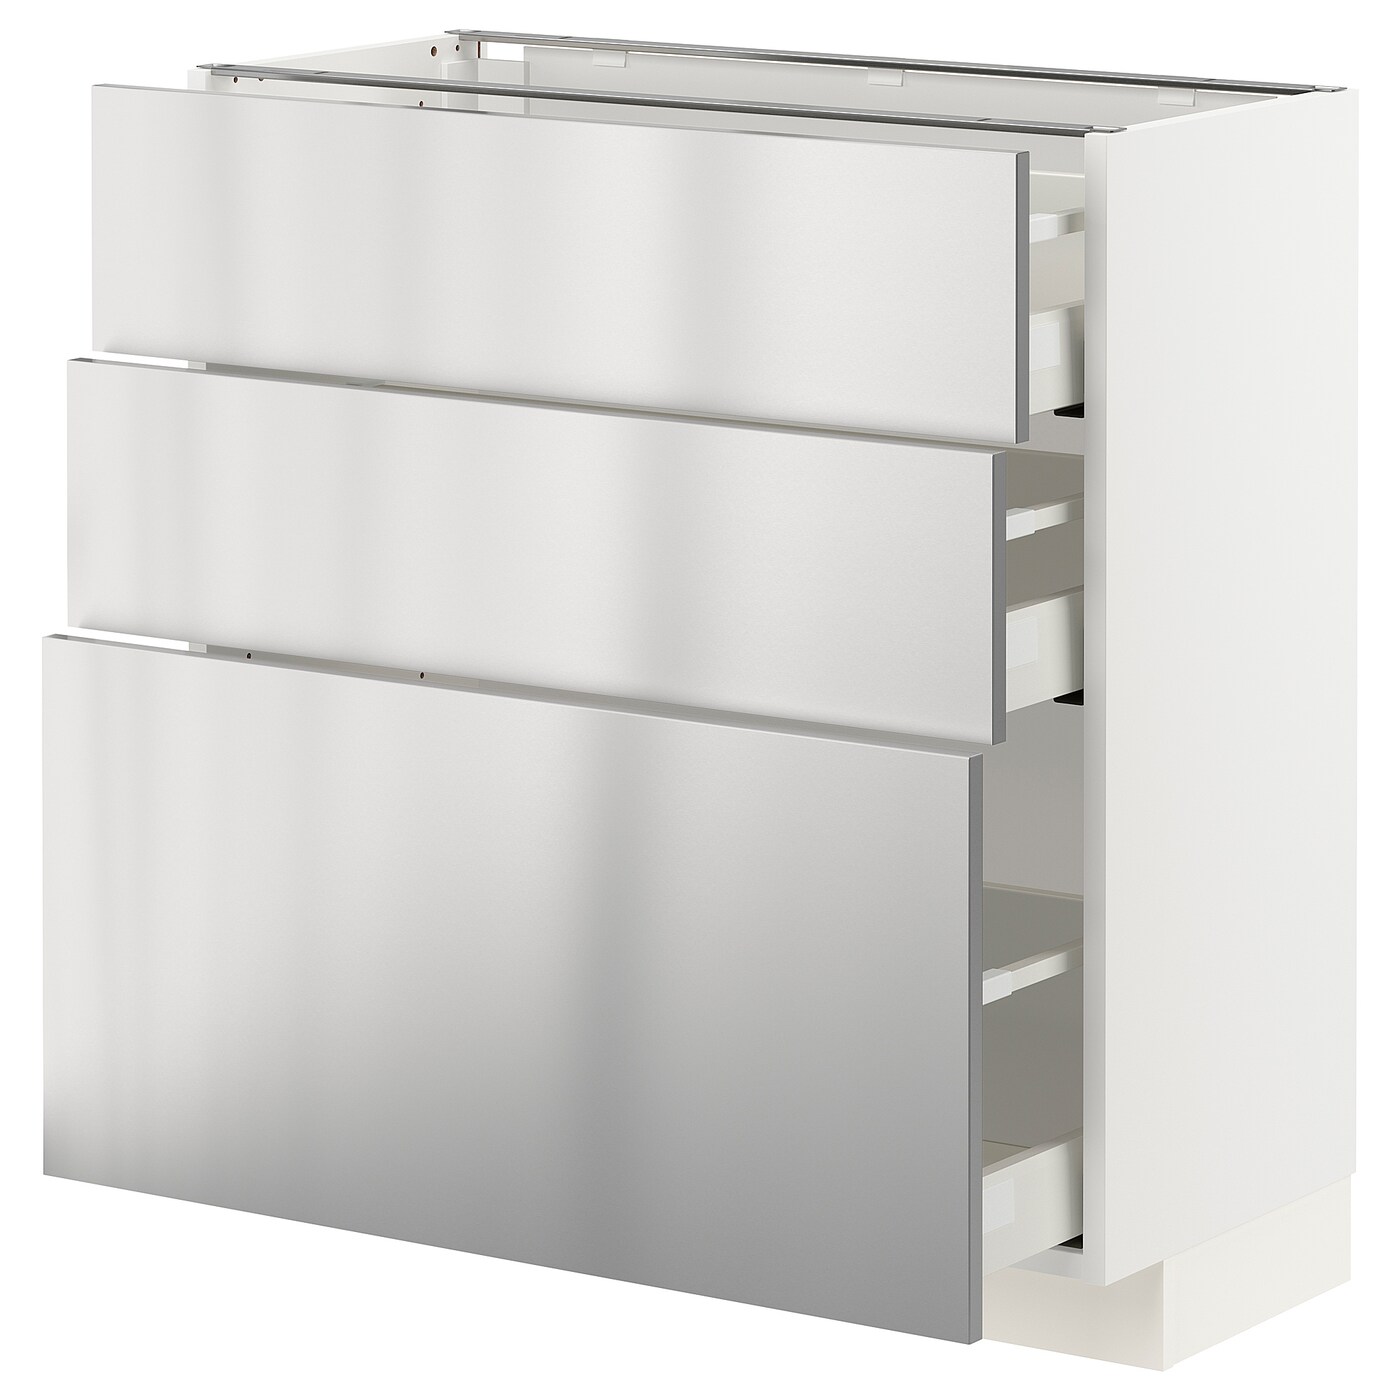 Напольный шкаф - METOD / MAXIMERA IKEA/ МЕТОД/ МАКСИМЕРА ИКЕА,  88х80 см, белый/серый